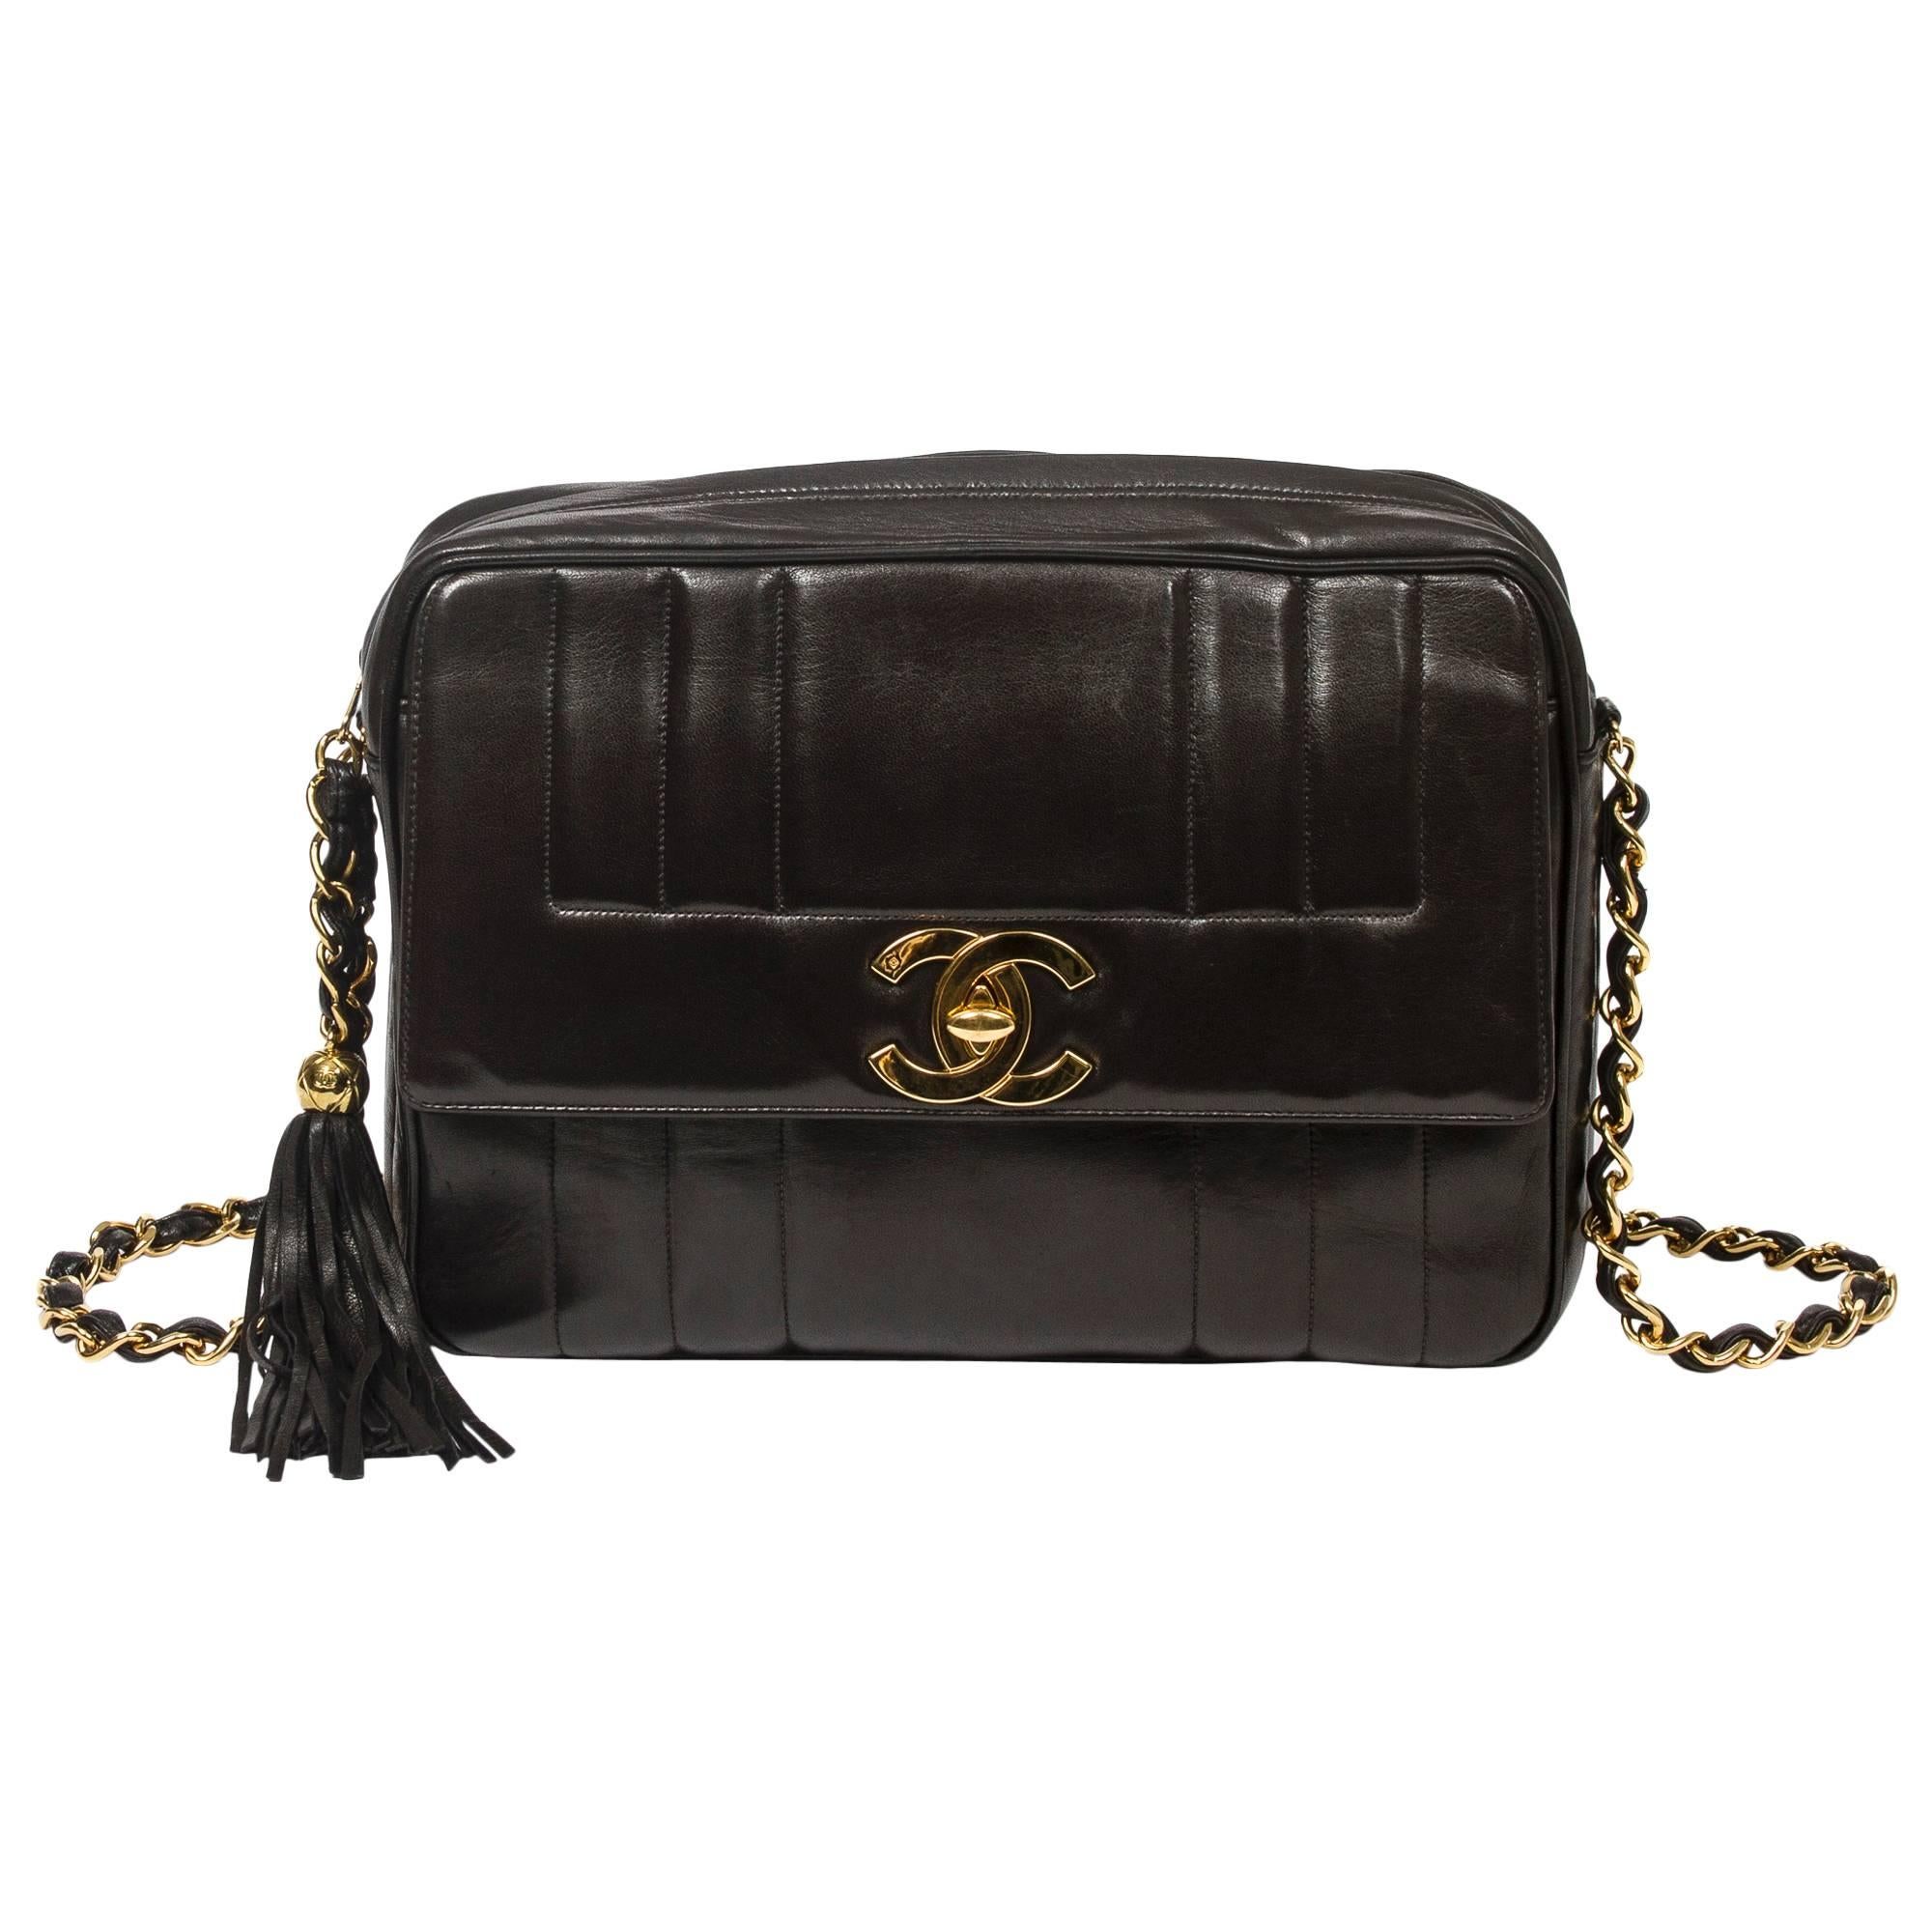 Chanel - Vintage Tassel Shoulder Bag Black Vertical Quilted Leather